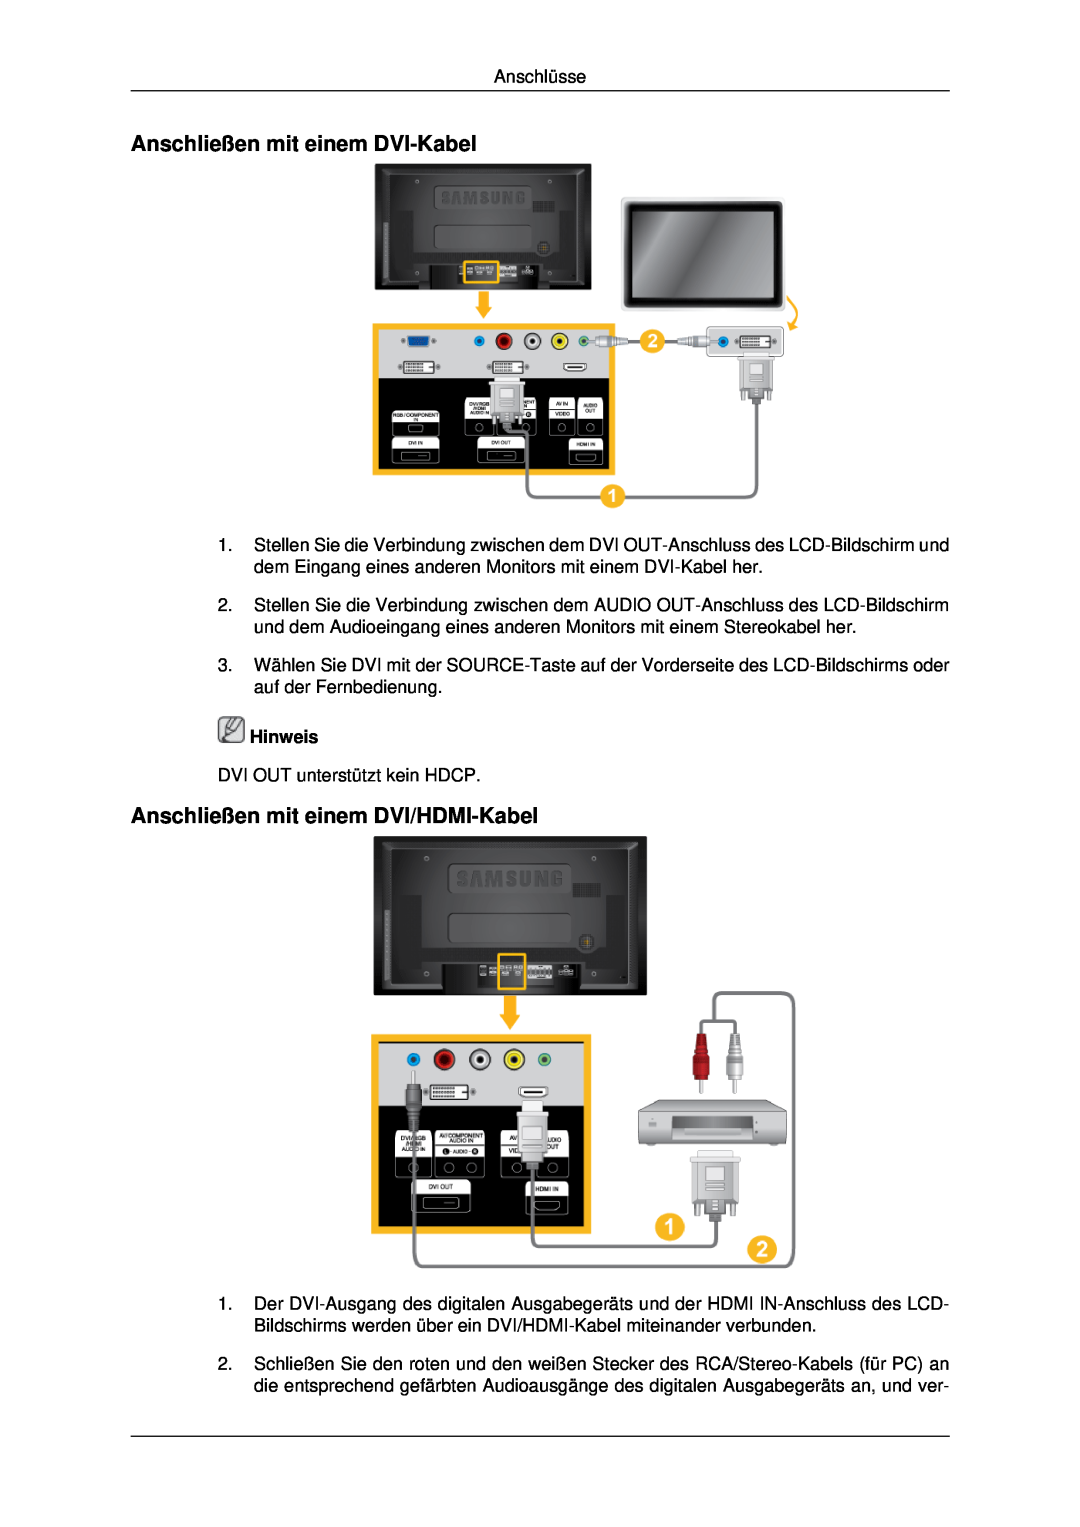 Samsung LH46MRTLBC/EN, LH46MSTABB/EN manual Anschließen mit einem DVI-Kabel, Anschließen mit einem DVI/HDMI-Kabel, Hinweis 